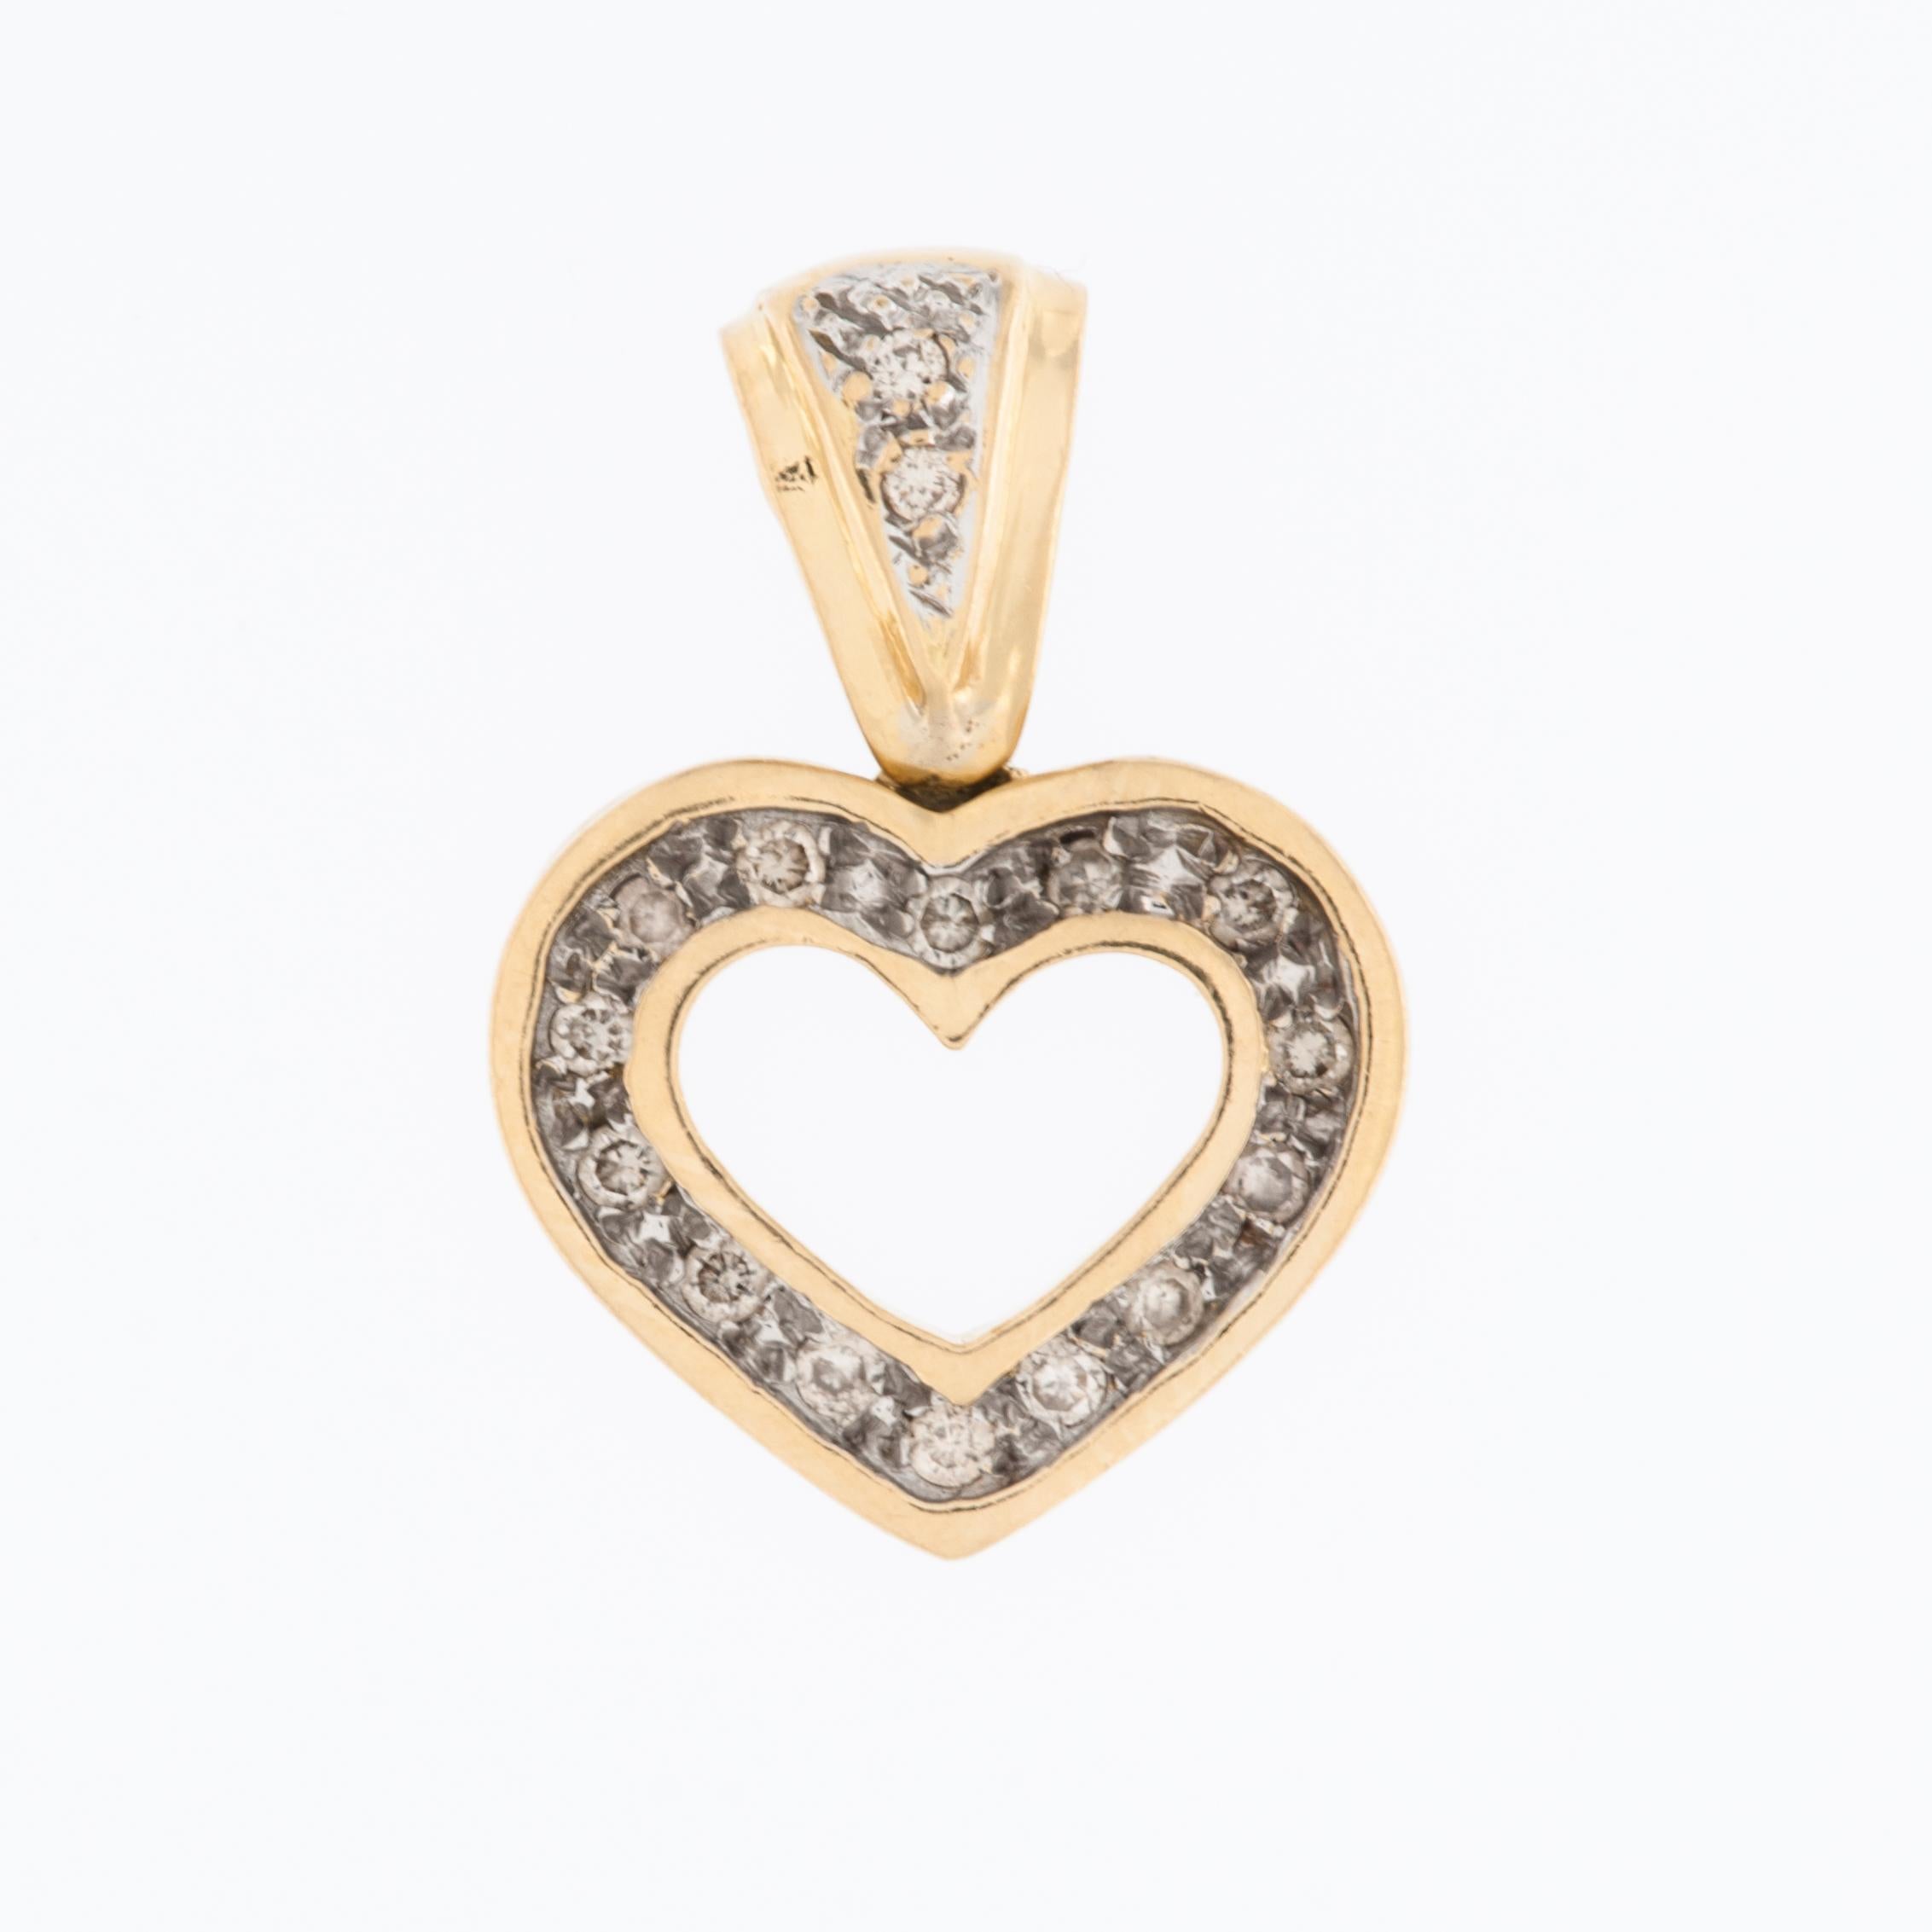 Le pendentif à cœur ouvert en or jaune et blanc 18 carats est un bijou saisissant et élégant qui allie harmonieusement un design classique à une touche de style contemporain. Fabriqué en or 18kt de haute qualité, ce pendentif présente un cœur